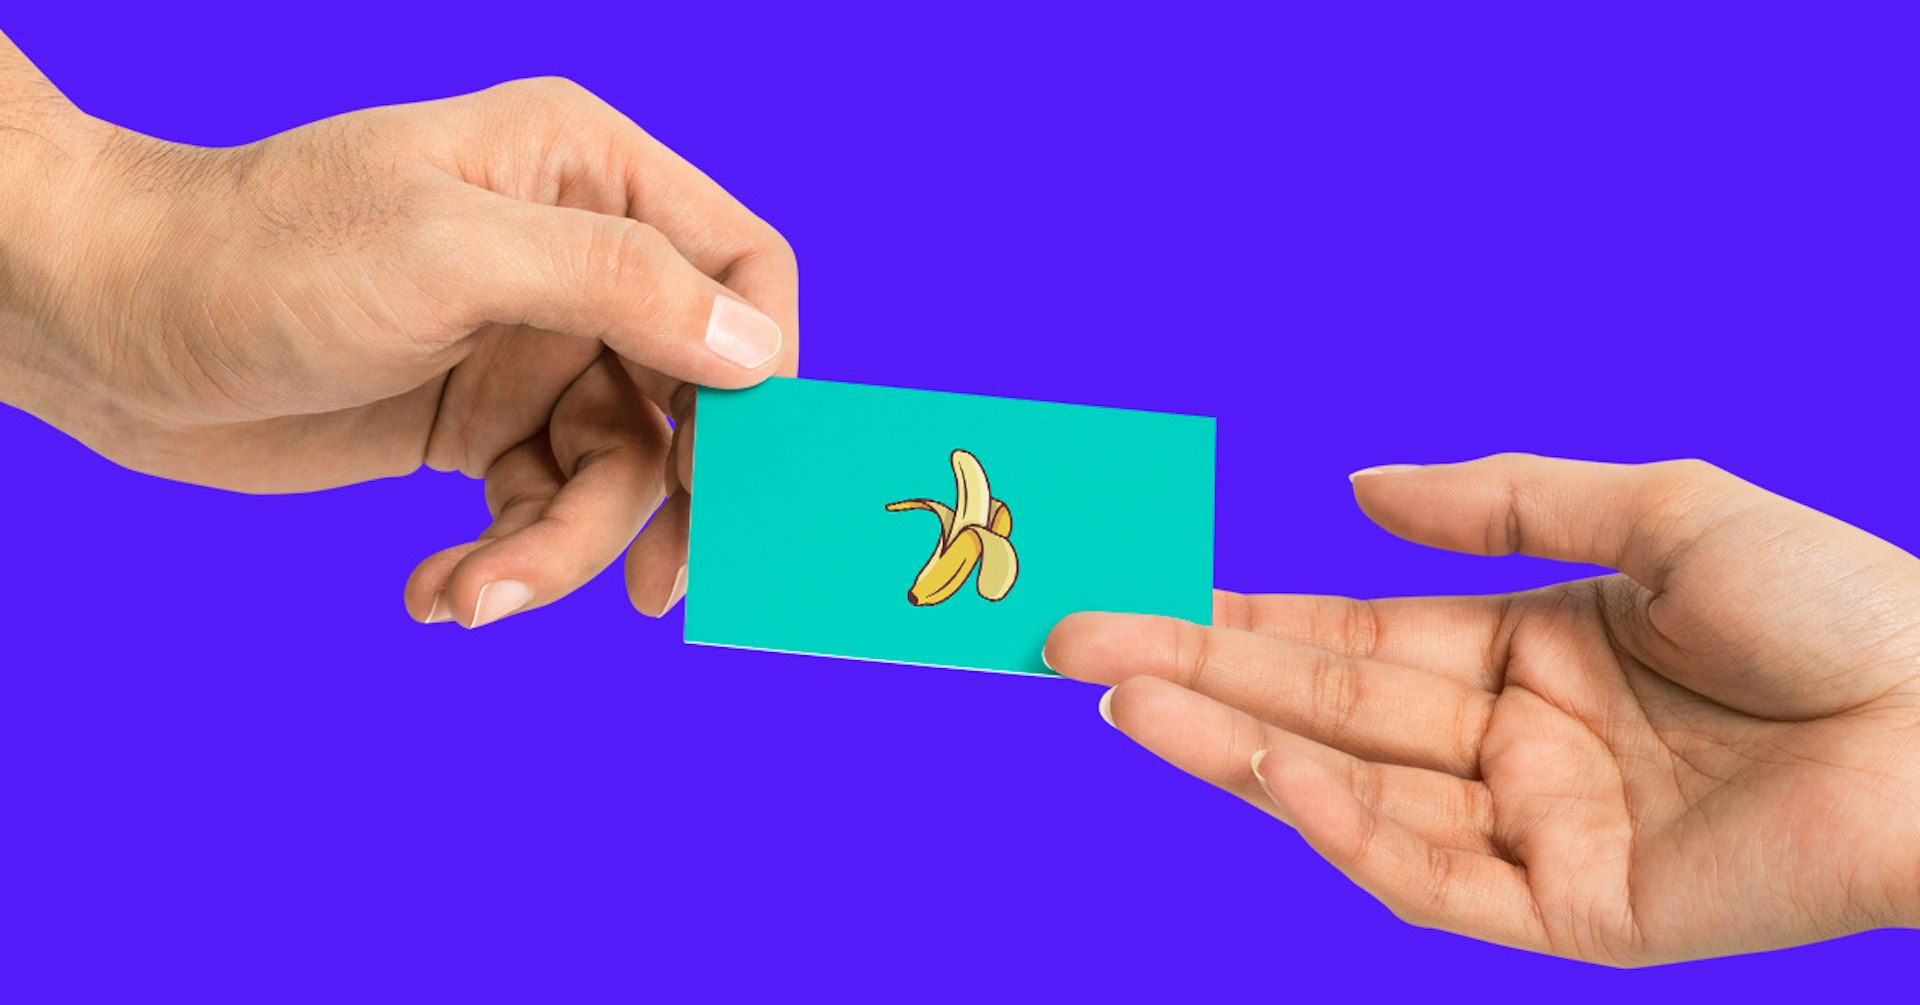 Descubre cómo hacer una tarjeta de presentación memorable y llega a miles de clientes potenciales